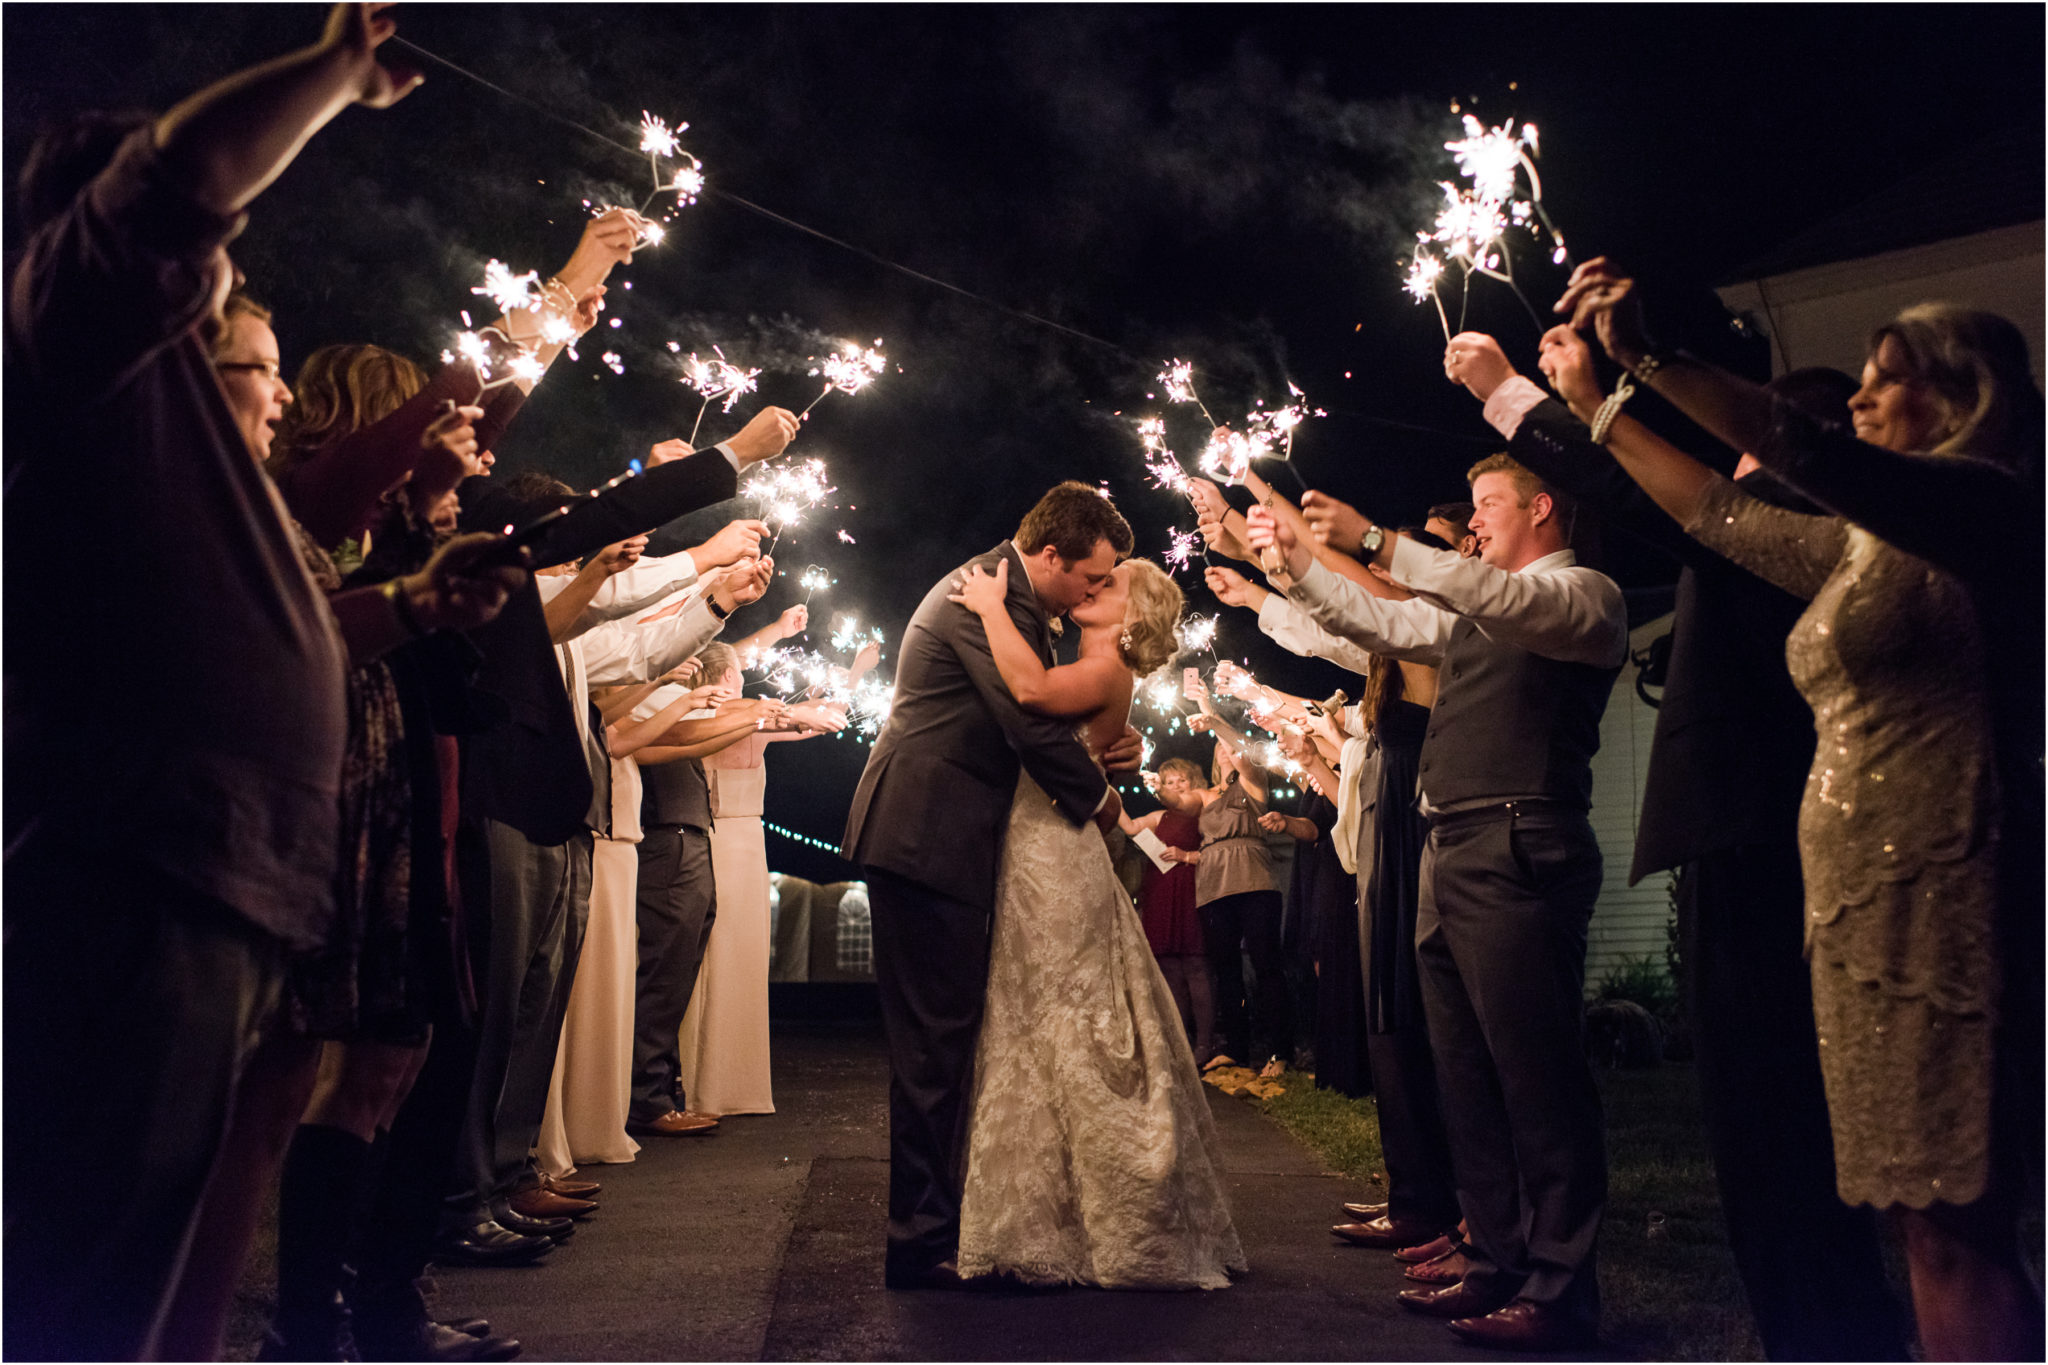 An Ellery Farms Wedding in Woodruff South Carolina sparkler exit